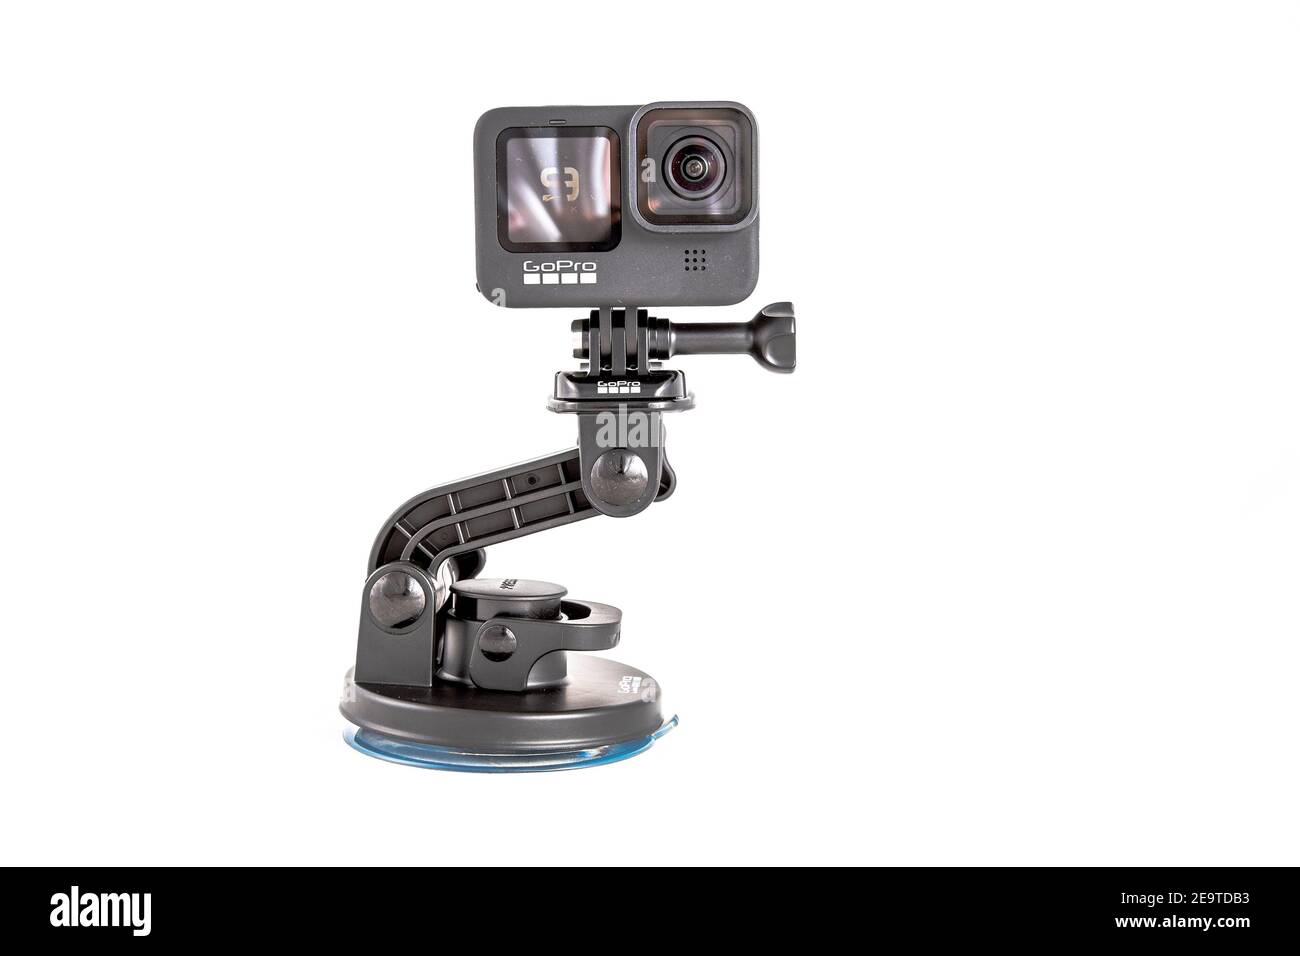 moscou, russie - Novemner 11, 2020: Nouvelle caméra d'action phare gopro HERO 9 noir sur le trépied d'accessoire original. Isolé sur fond blanc. Banque D'Images